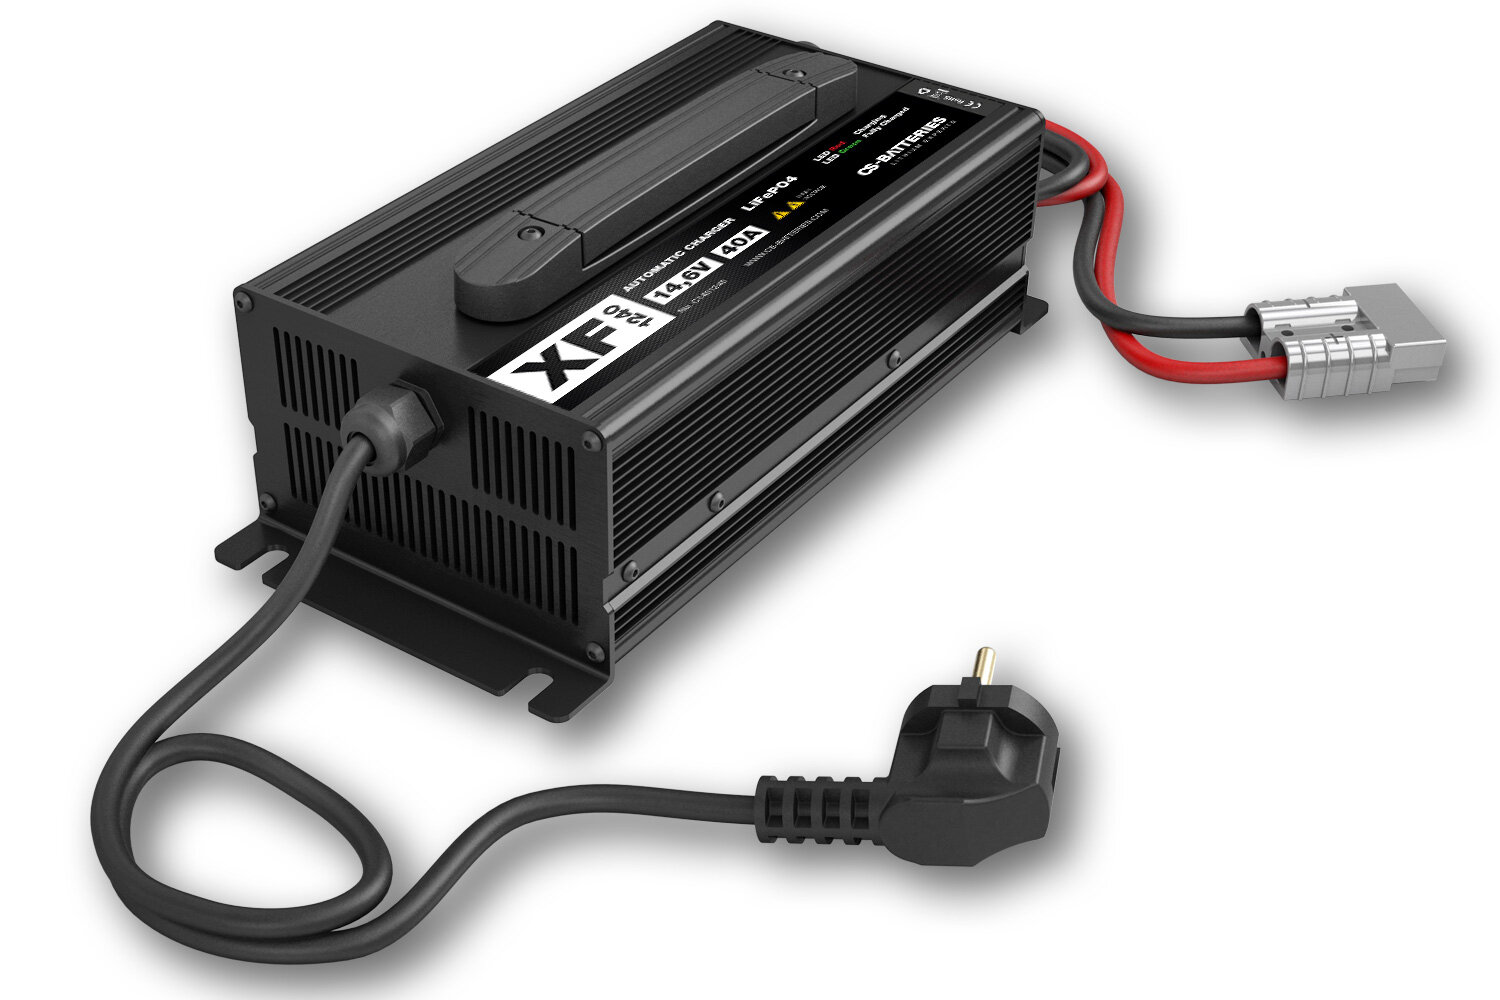 Ladegerät für Batterie 6 - 12 Volt von Energysafe (bis 14Ah) von